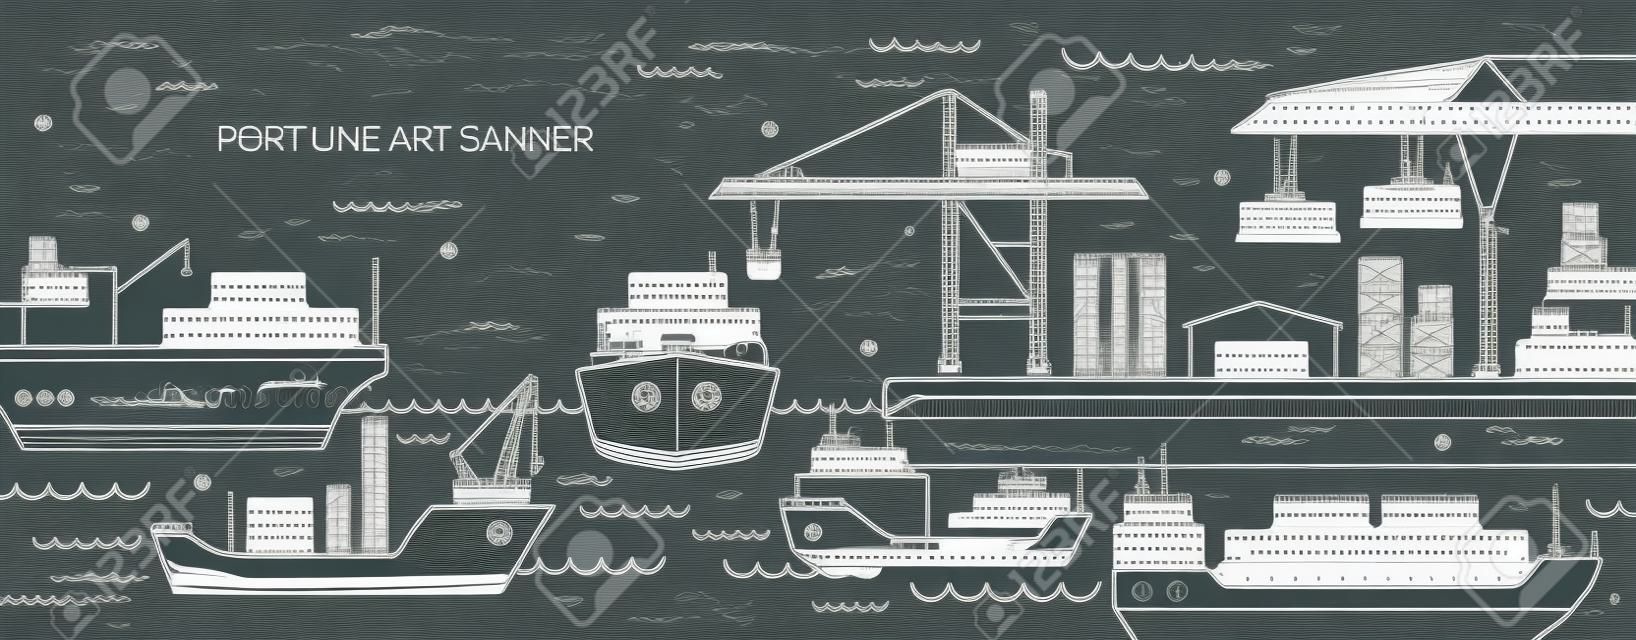 Horizontale banner met zeehaven, zeevrachtterminal, vrachtschepen of schepen die containers met contourlijnen vervoeren. Zeevervoer. Monochrome vector illustratie in lineaire stijl